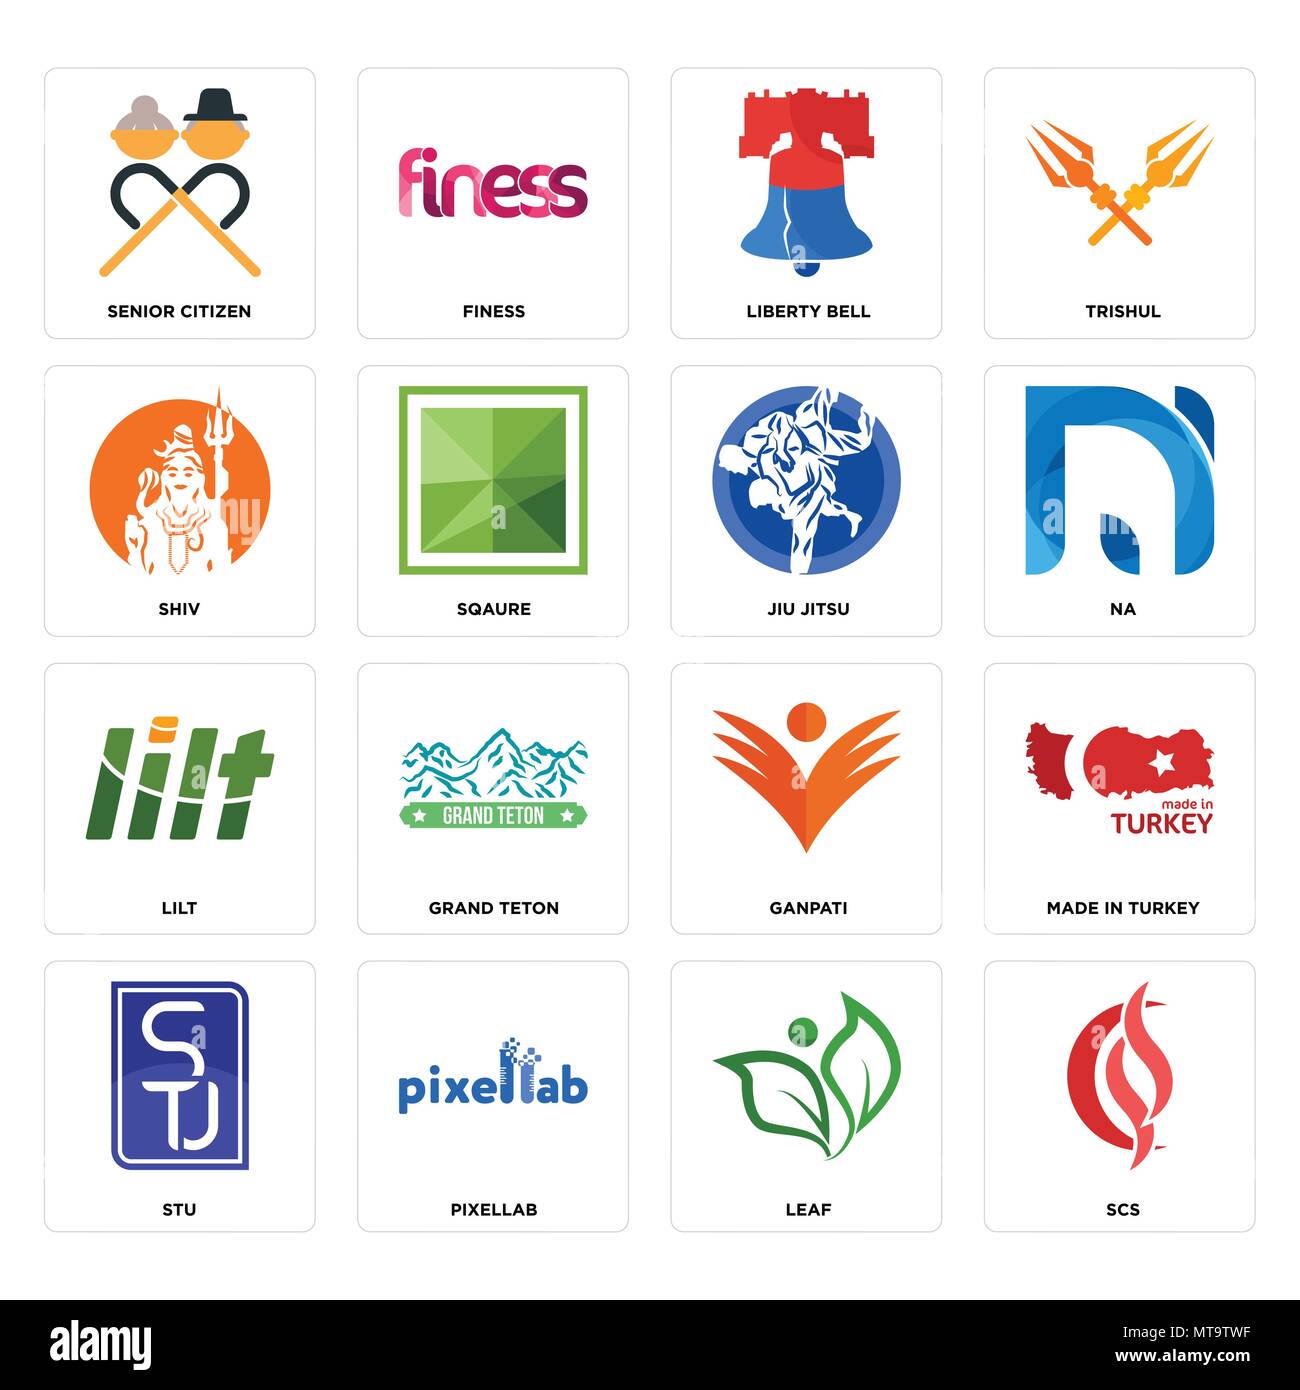 16 Einfache editierbare Ikonen wie scs, Blatt, pixellab, Stu, in der Türkei gemacht wurden, Senioren, Shiv, Lilt, Jiu Jitsu für mobile verwendet werden, die Web-UI Stock Vektor